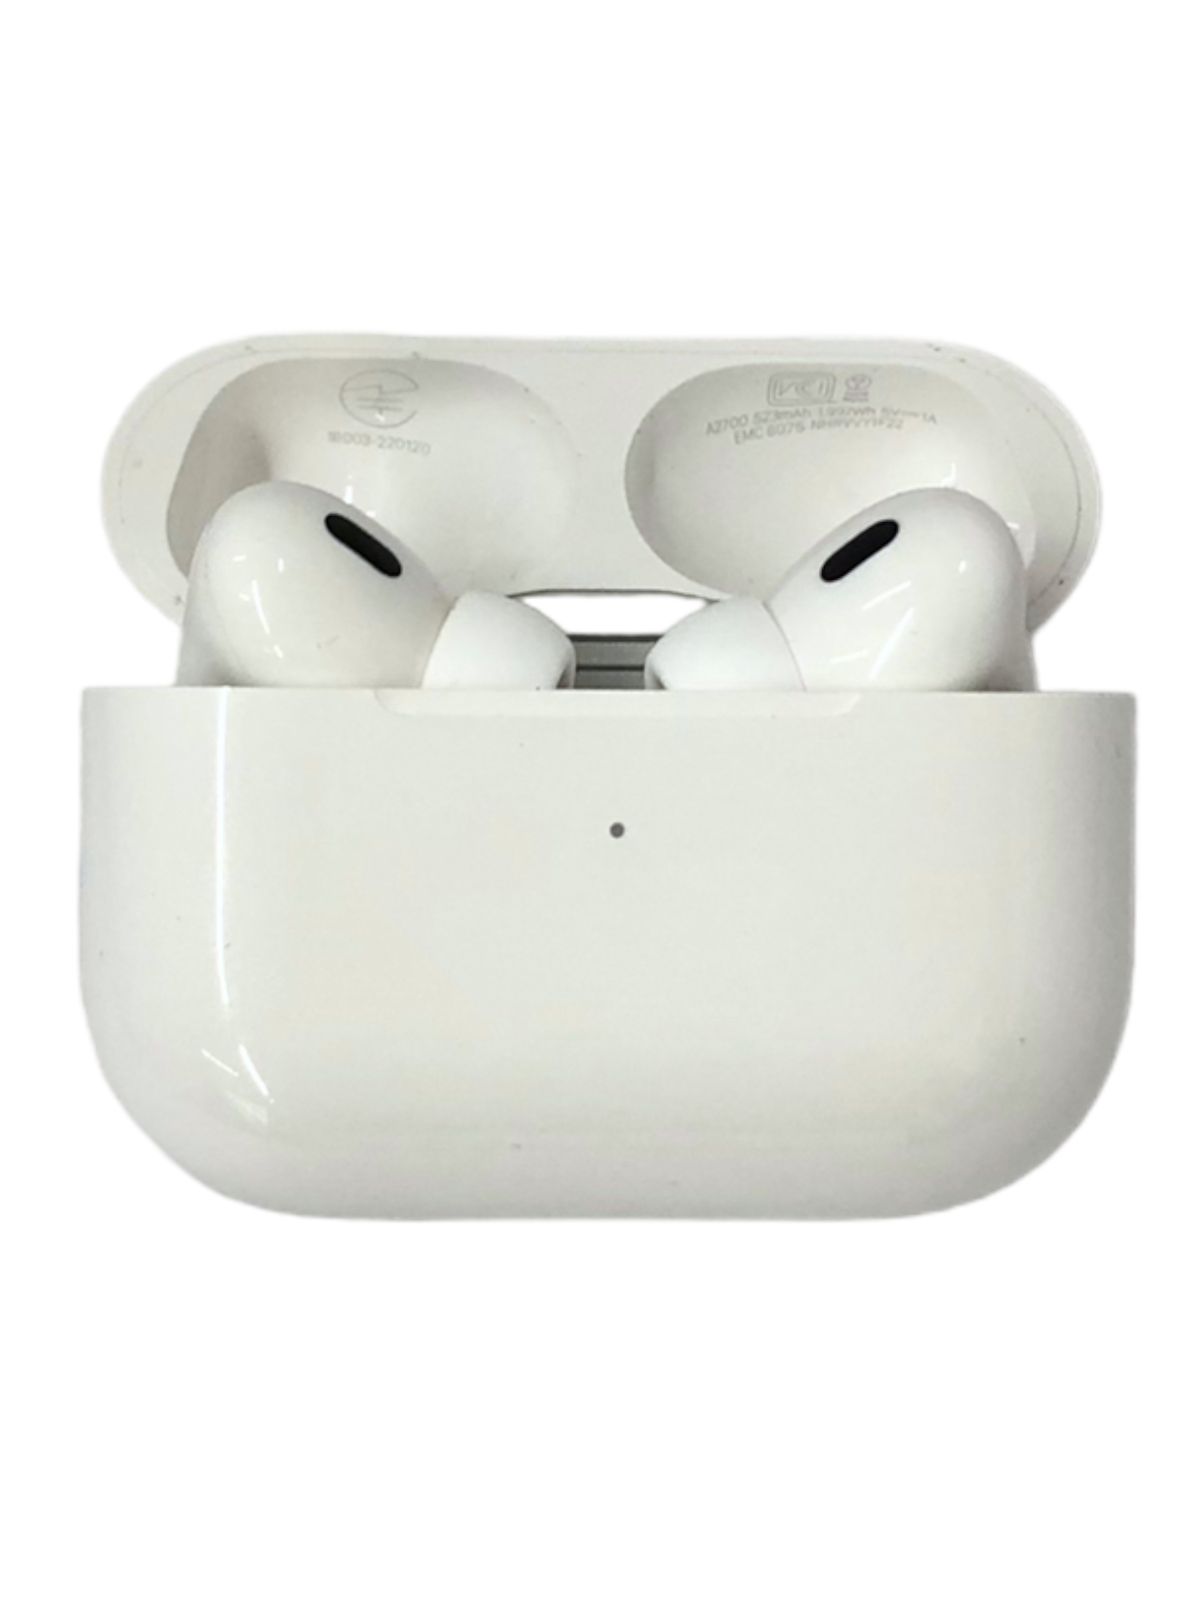 Apple (アップル) Airpods pro 第2世代 ホワイト MQD83J/A ワイヤレス 